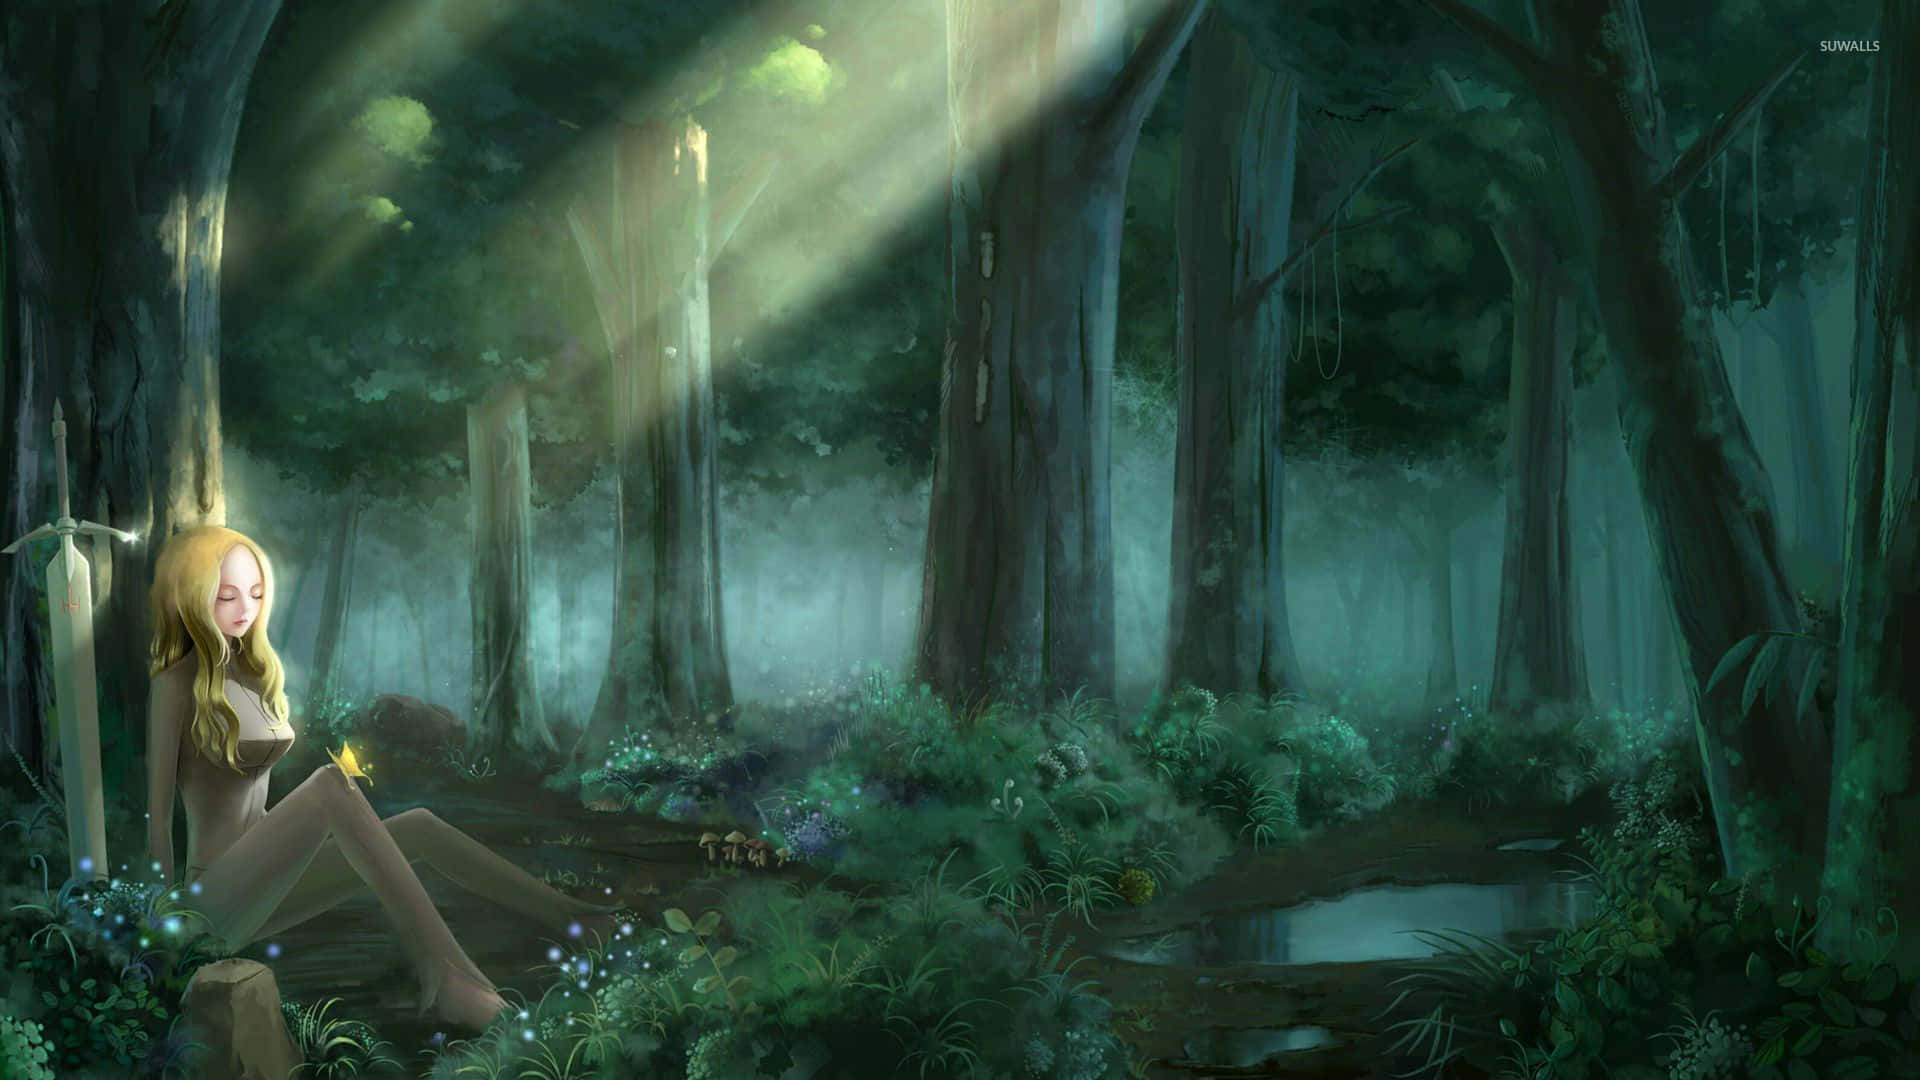 Desfruteda Atmosfera Mágica Da Natureza Neste Bosque De Anime. Papel de Parede